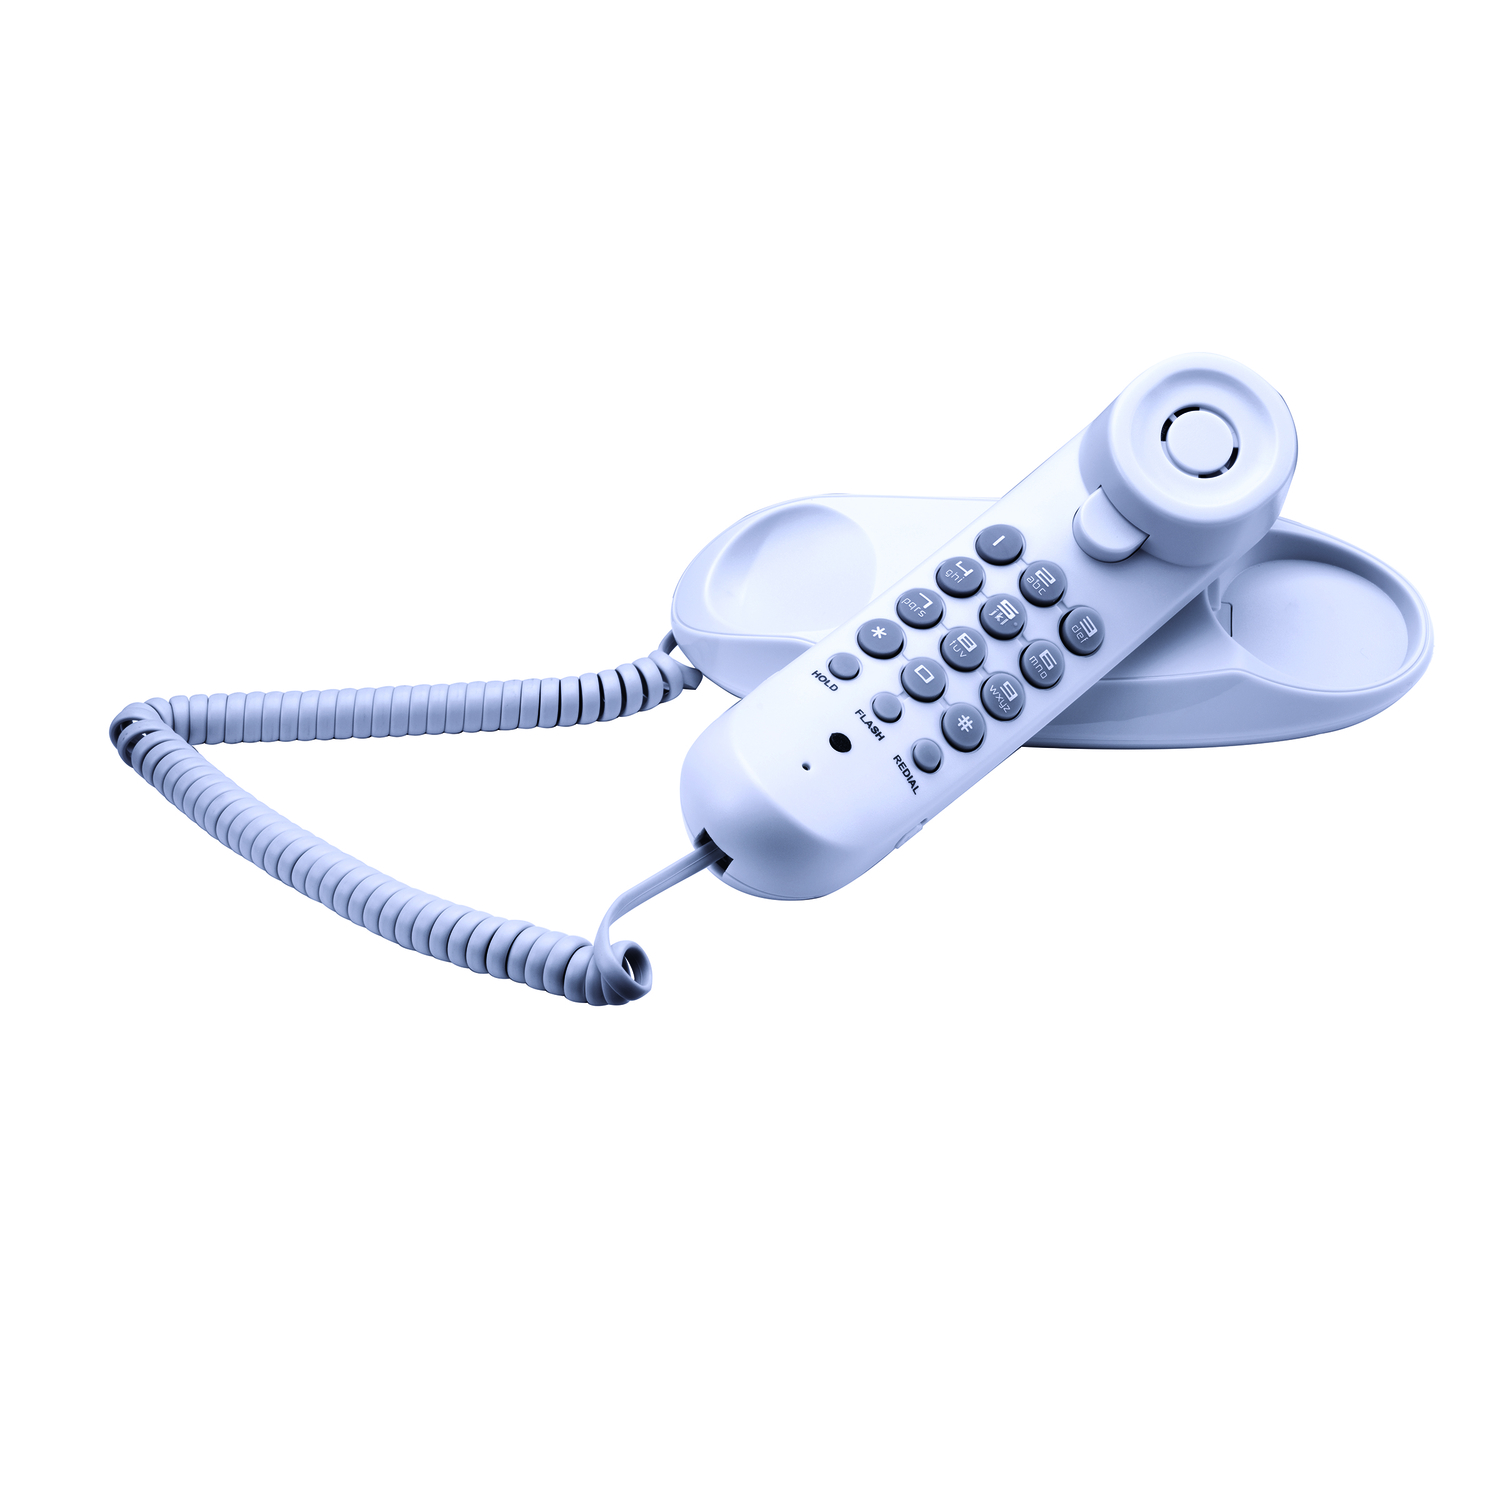 Vtech CD1153 Telephone 1 pk Digital White White